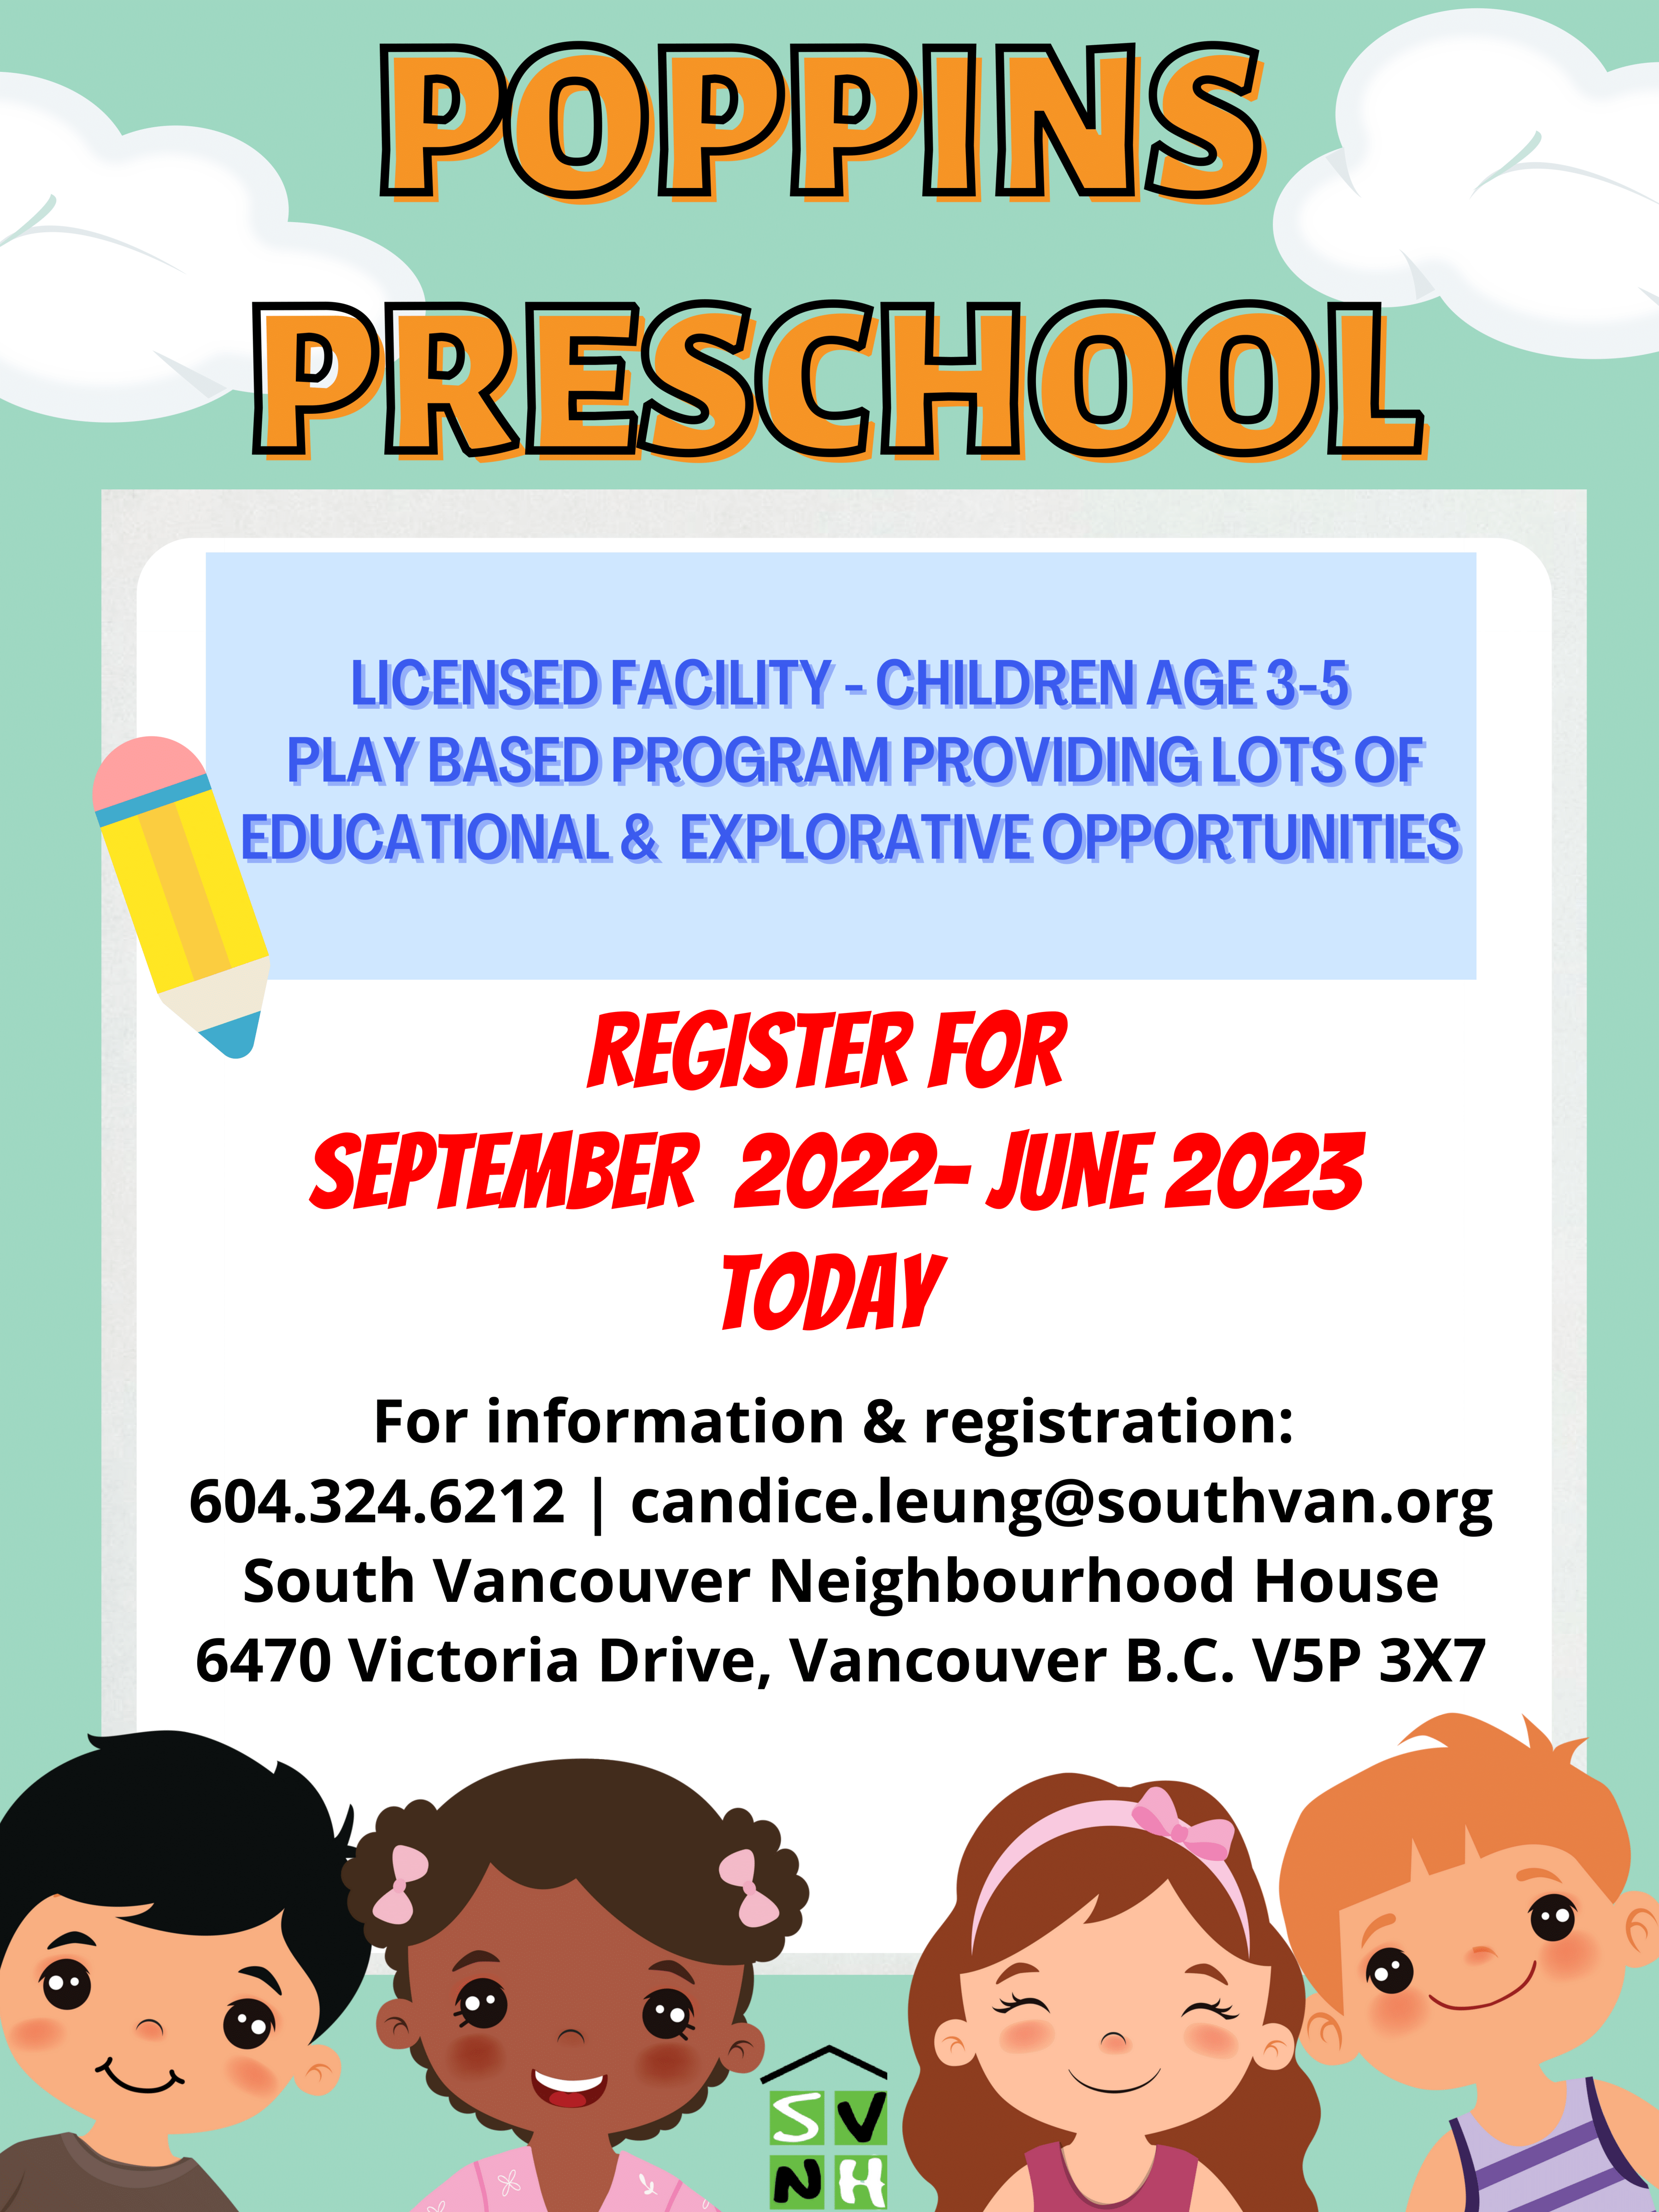 Poppins Preschool 2022-2023 Registration is Open!